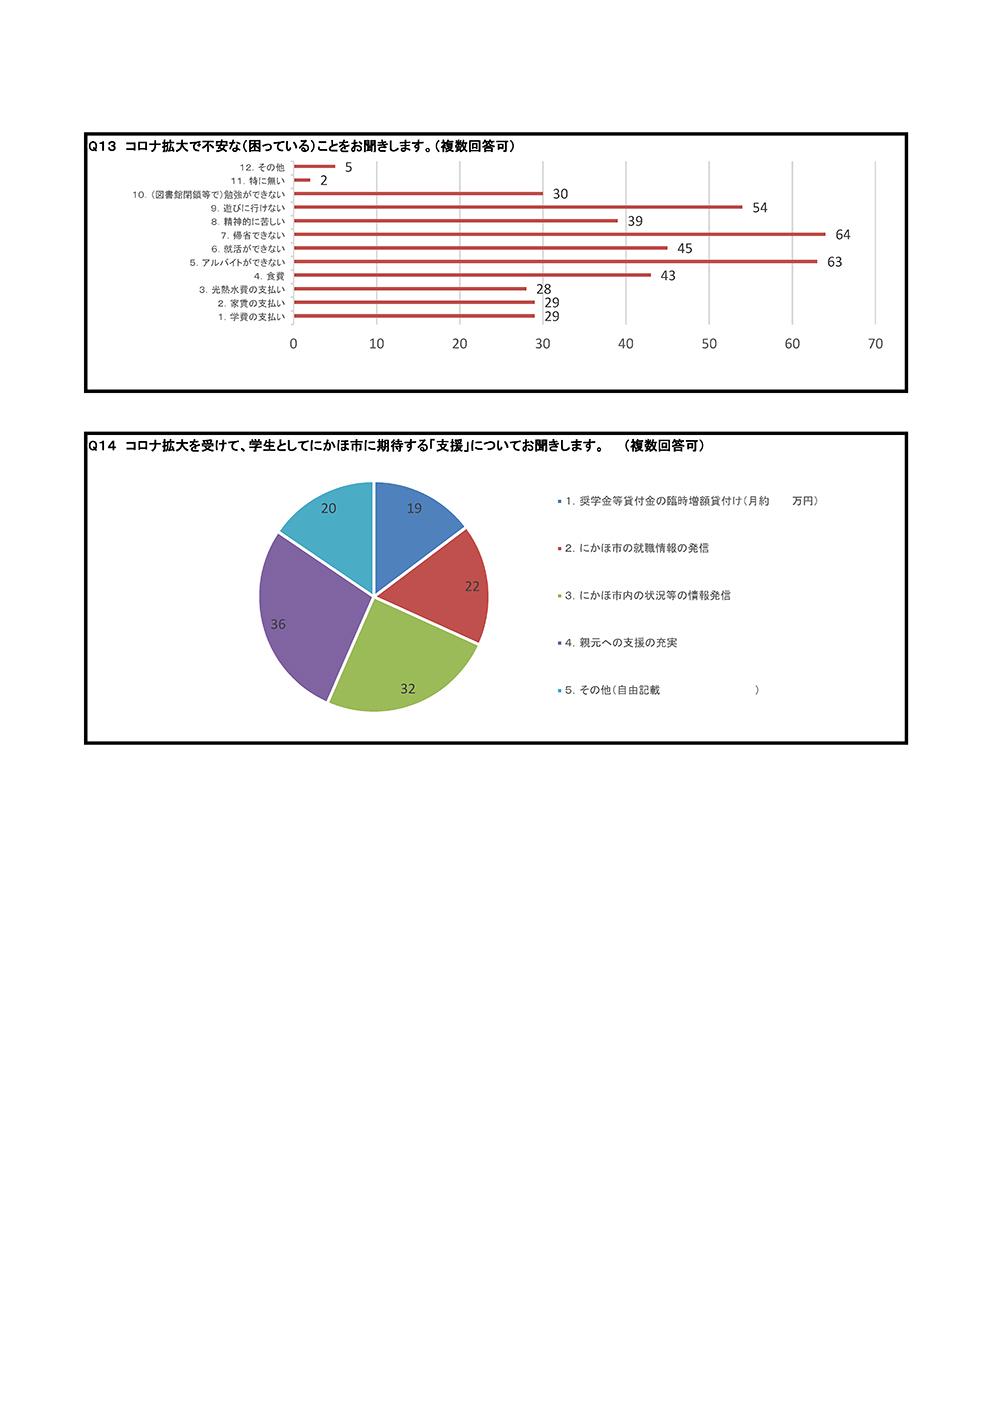 コロナ拡大の不安と期待する支援を円と棒で表した学生アンケートの結果のグラフ